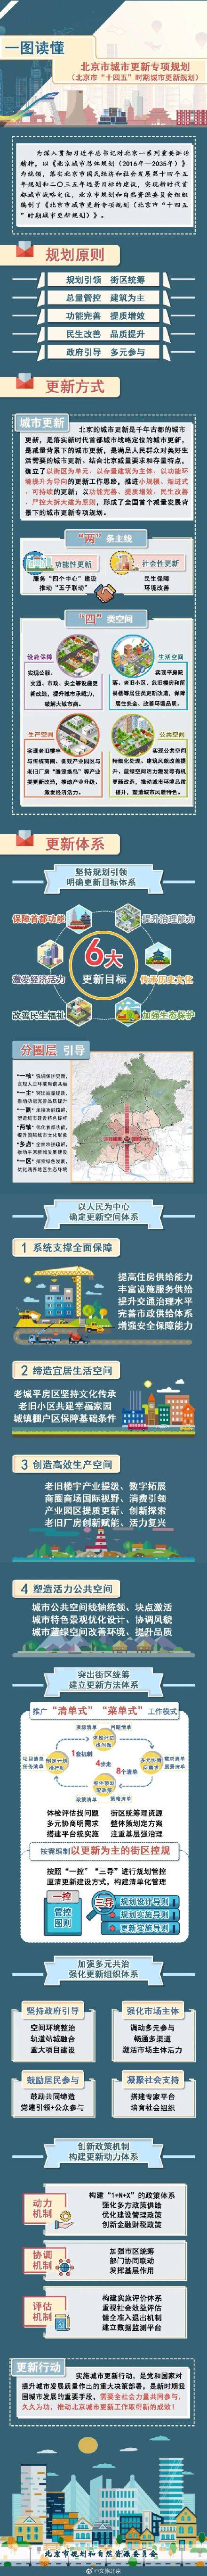 北京鼓励老旧厂房发展文旅等新型服务